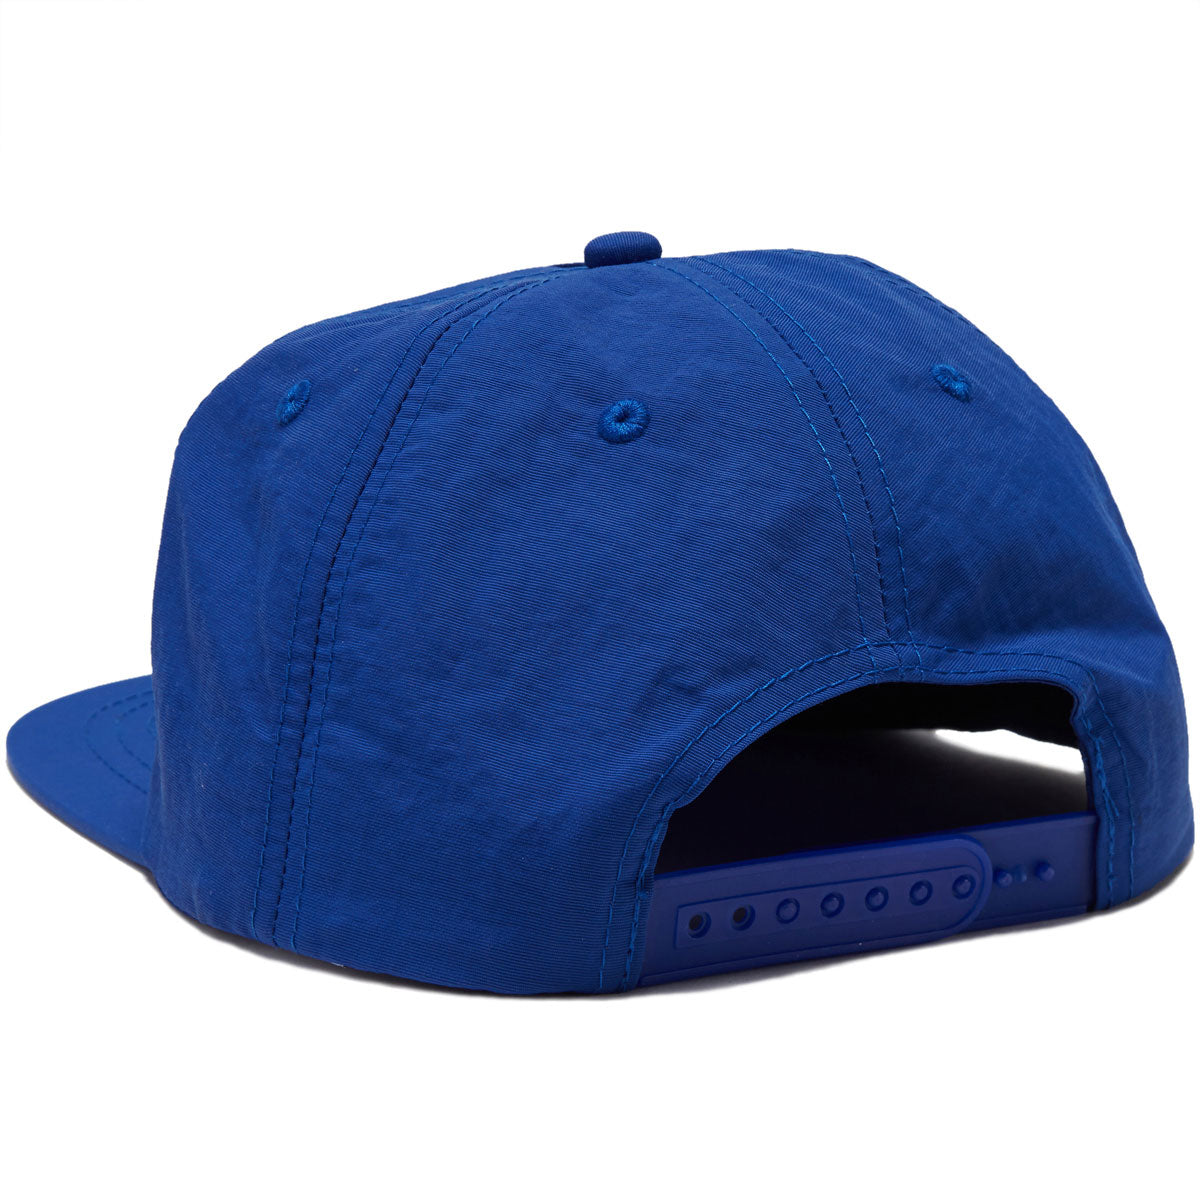 Snot Booger Logo 5 Panel Hat - Blue image 2